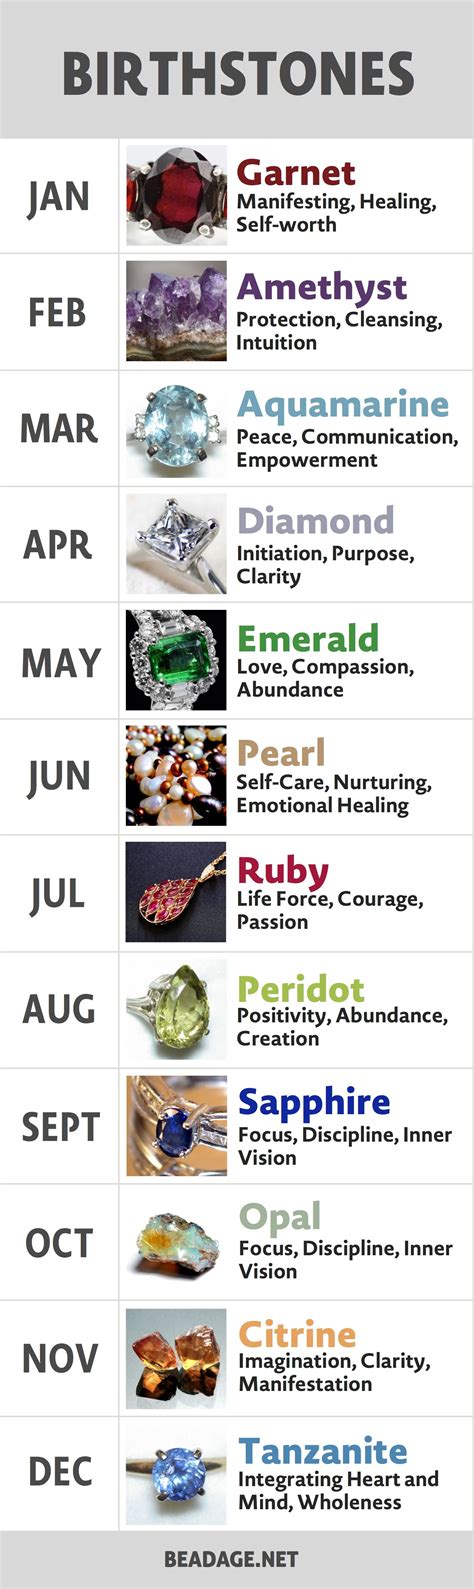 List Of Birthstones Gemstones By Month Month Gemstones Birthstones